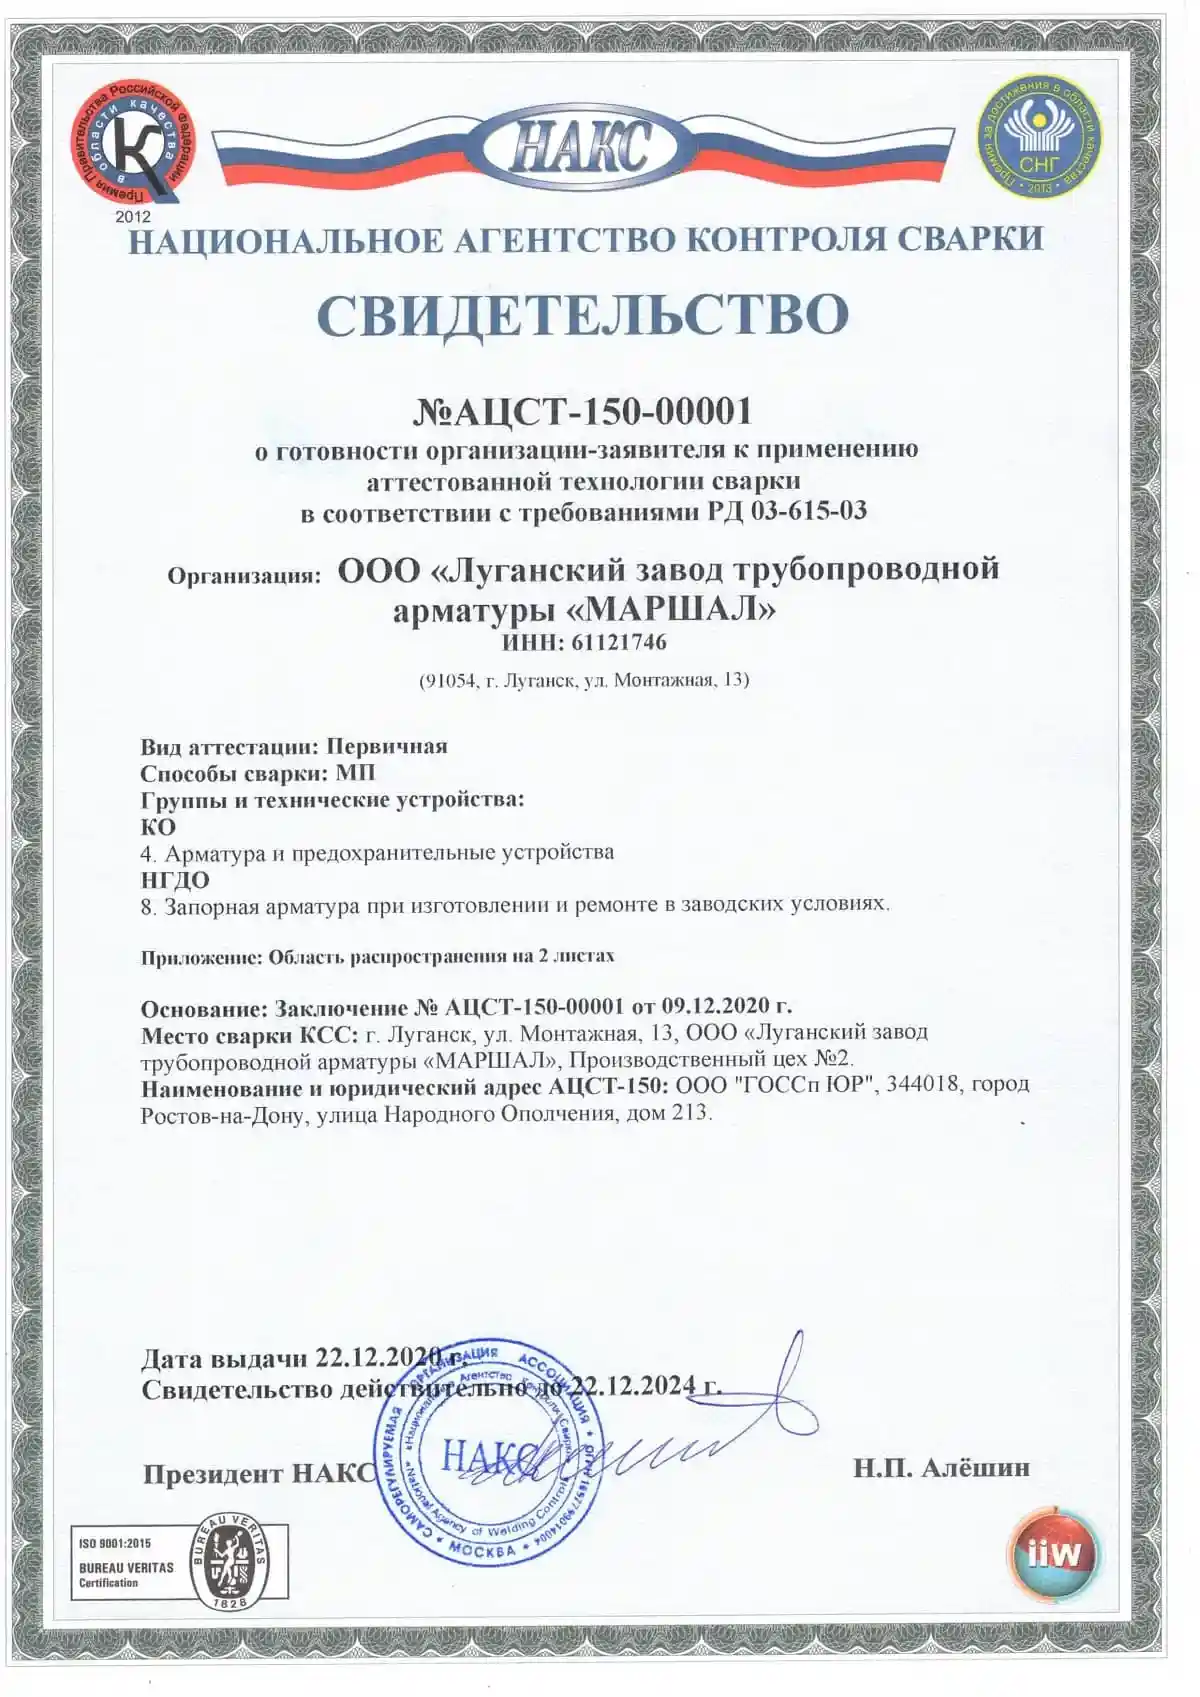 Сертификат Национального агентства сварки АЦСТ-150-00001 о соответствии требованиям РД 03-615-03. Срок действия 22.12.2024